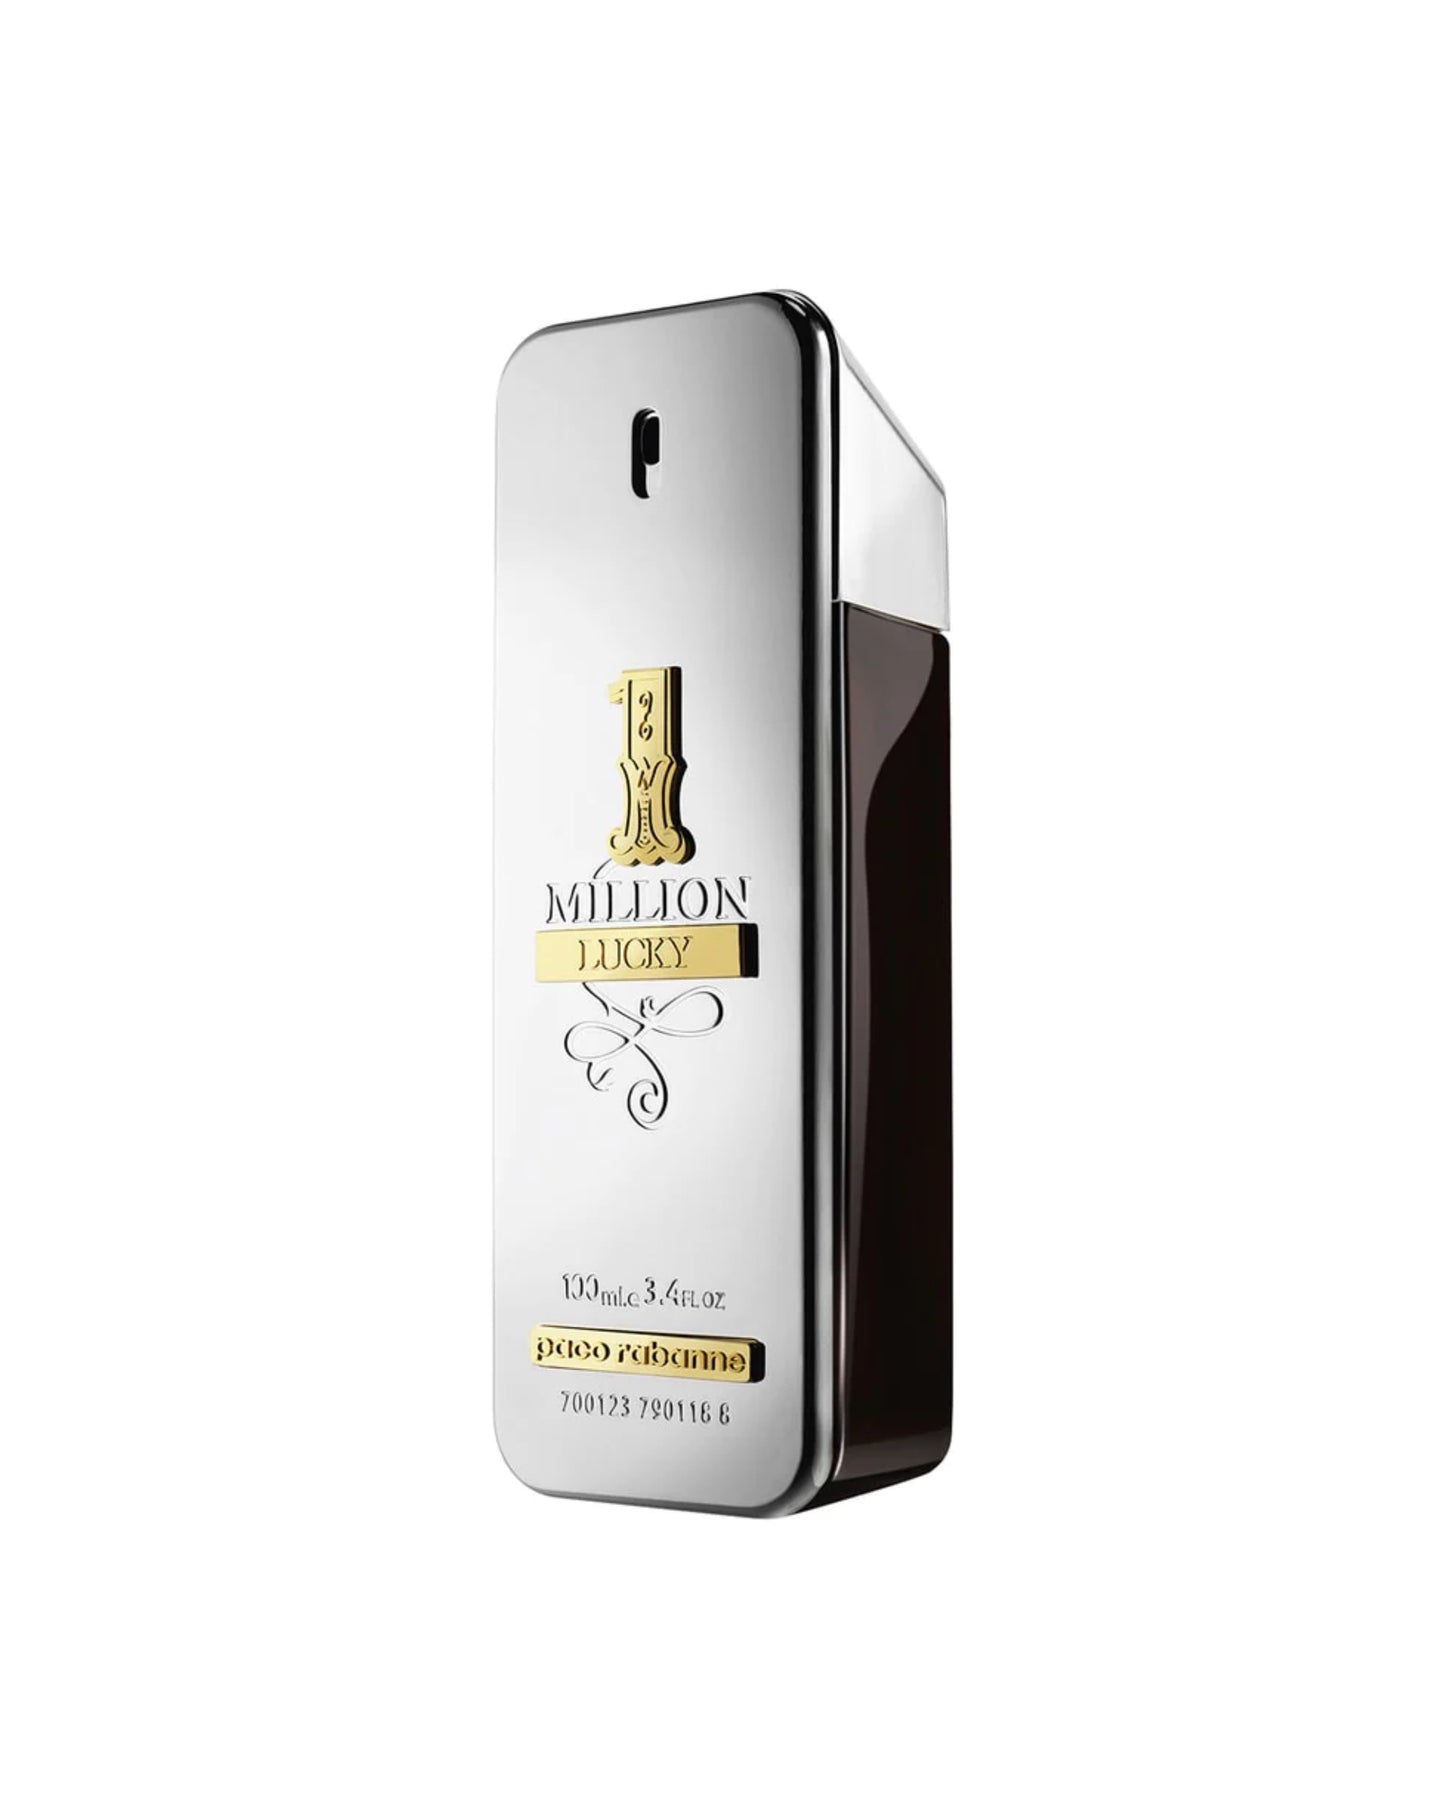 PACO RABANNE - 1 MILLION LUCKY Eau de Toilette-foryou-vente de parfum original au Maroc-parfum original Maroc-prix maroc-foryou parfum original-authentique-parfum authentique-prix maroc-original-original perfum-perfume-eau de parfum